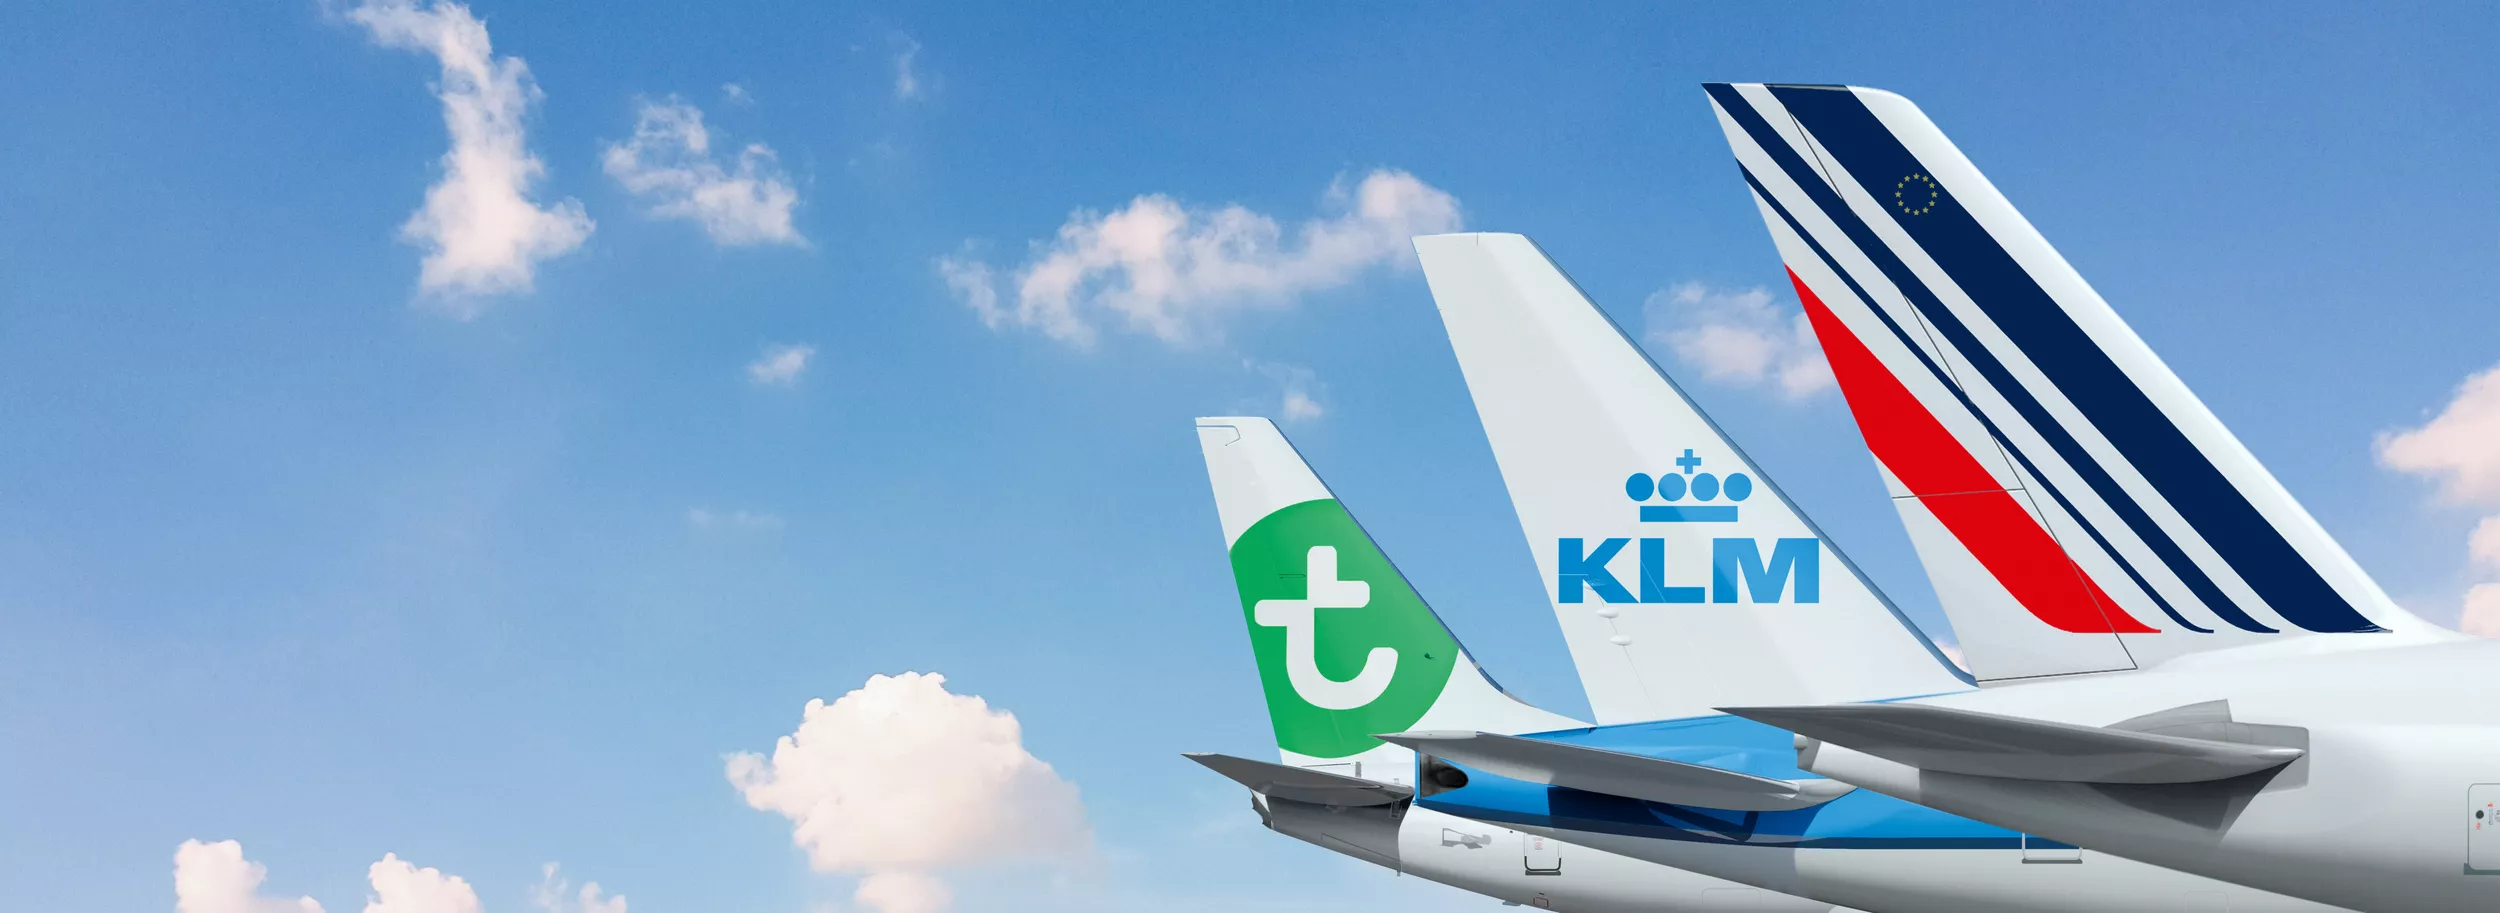 AirFrance – KLM grupa je najveći svetski korisnik održivog avio-goriva drugu godinu za redom